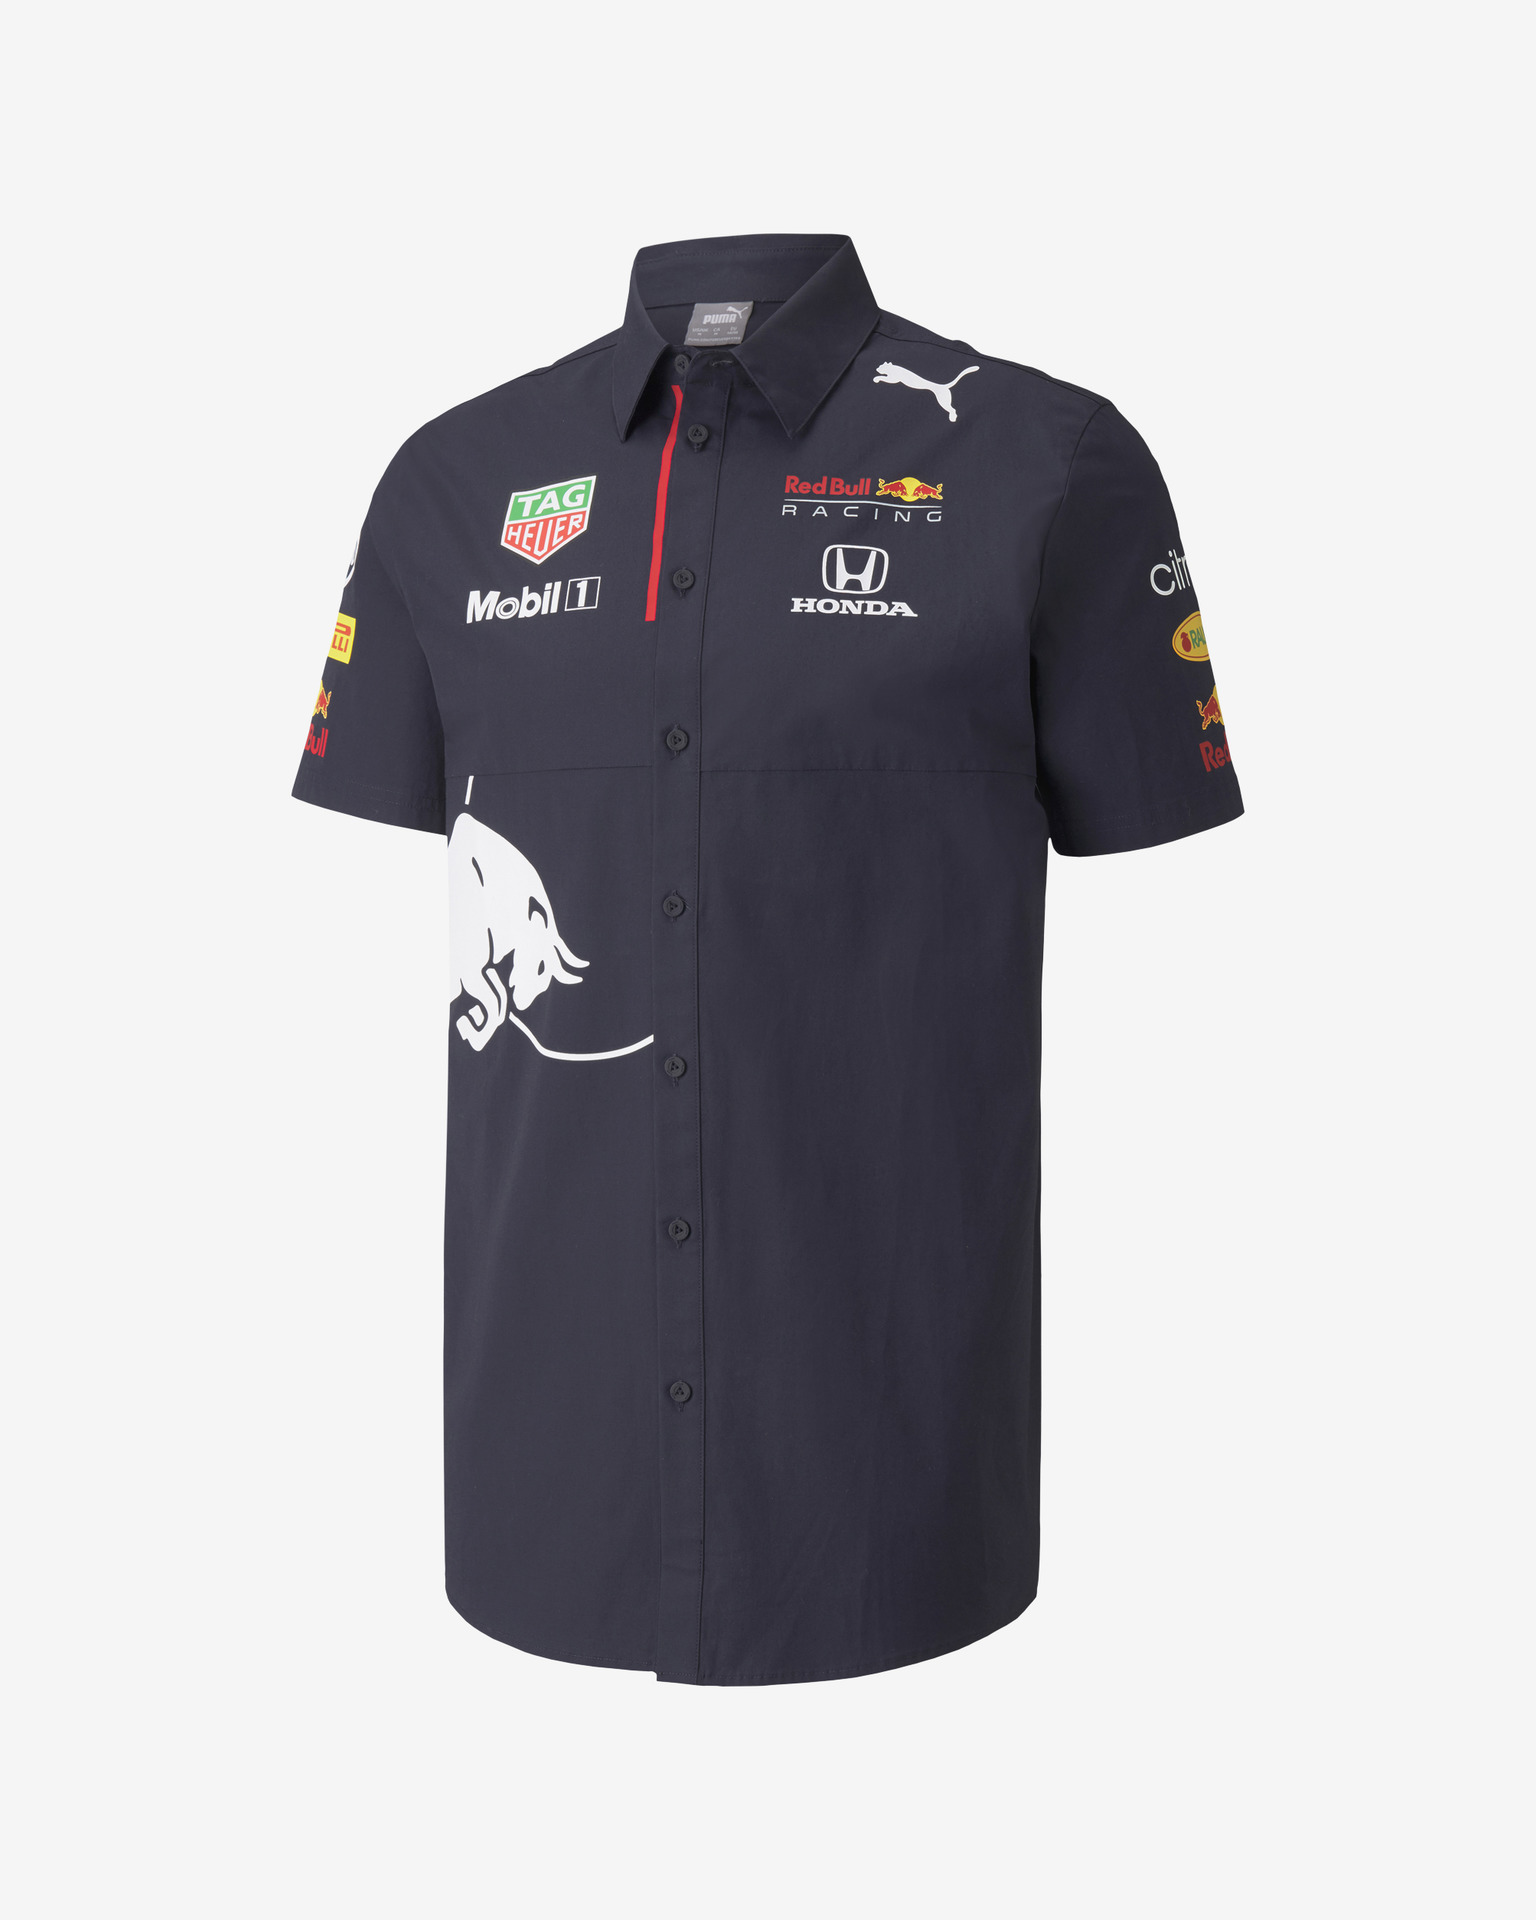 Puma - Red Bull Team Polo T-shirt